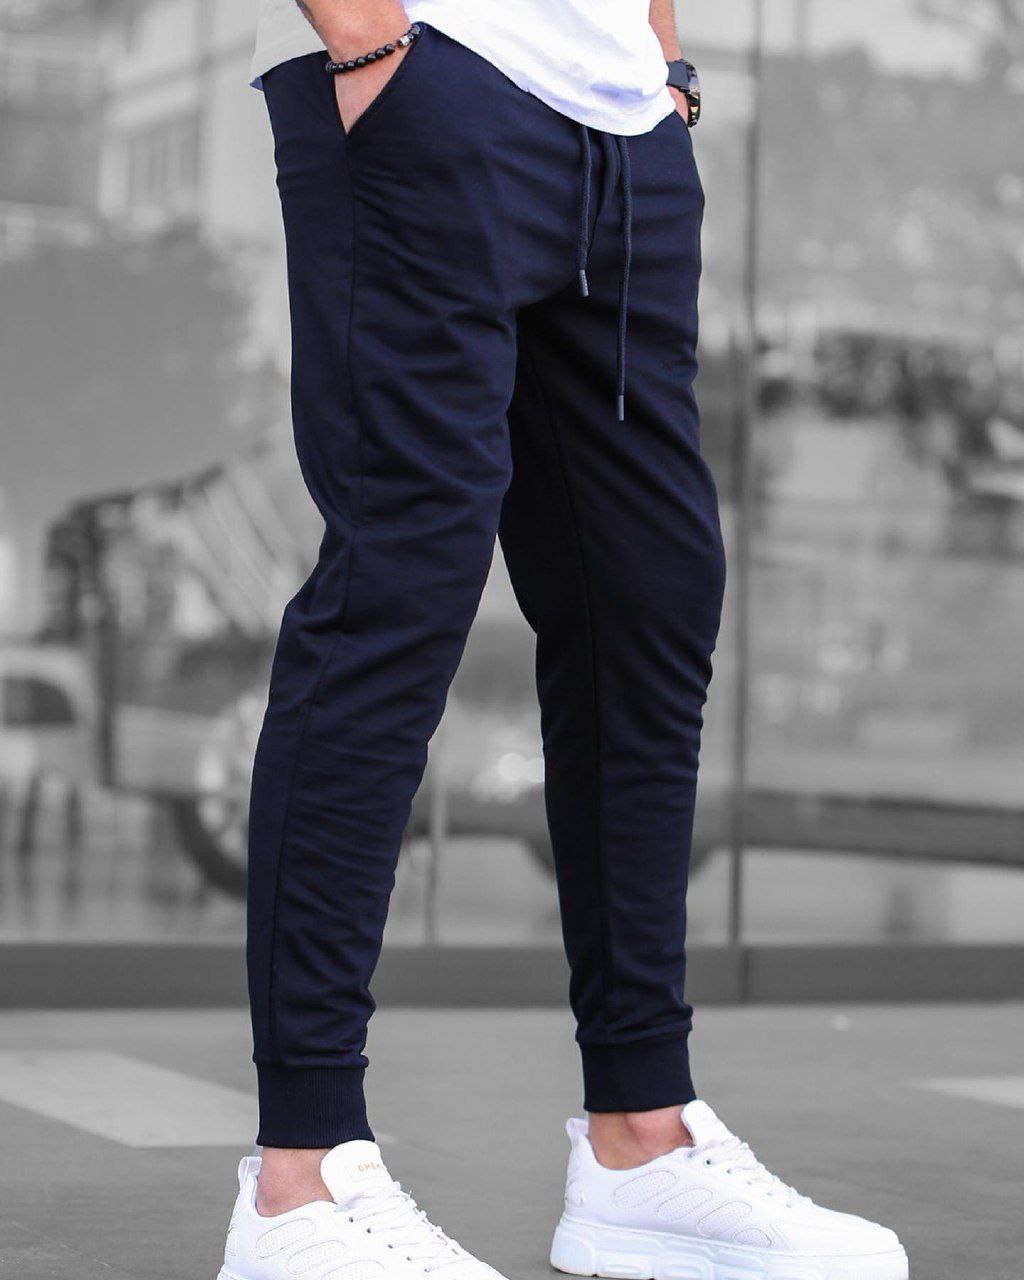 Мужские спортивные штаны трикотажные Reload Step синие / Легкие стильные зауженные спортивки летние